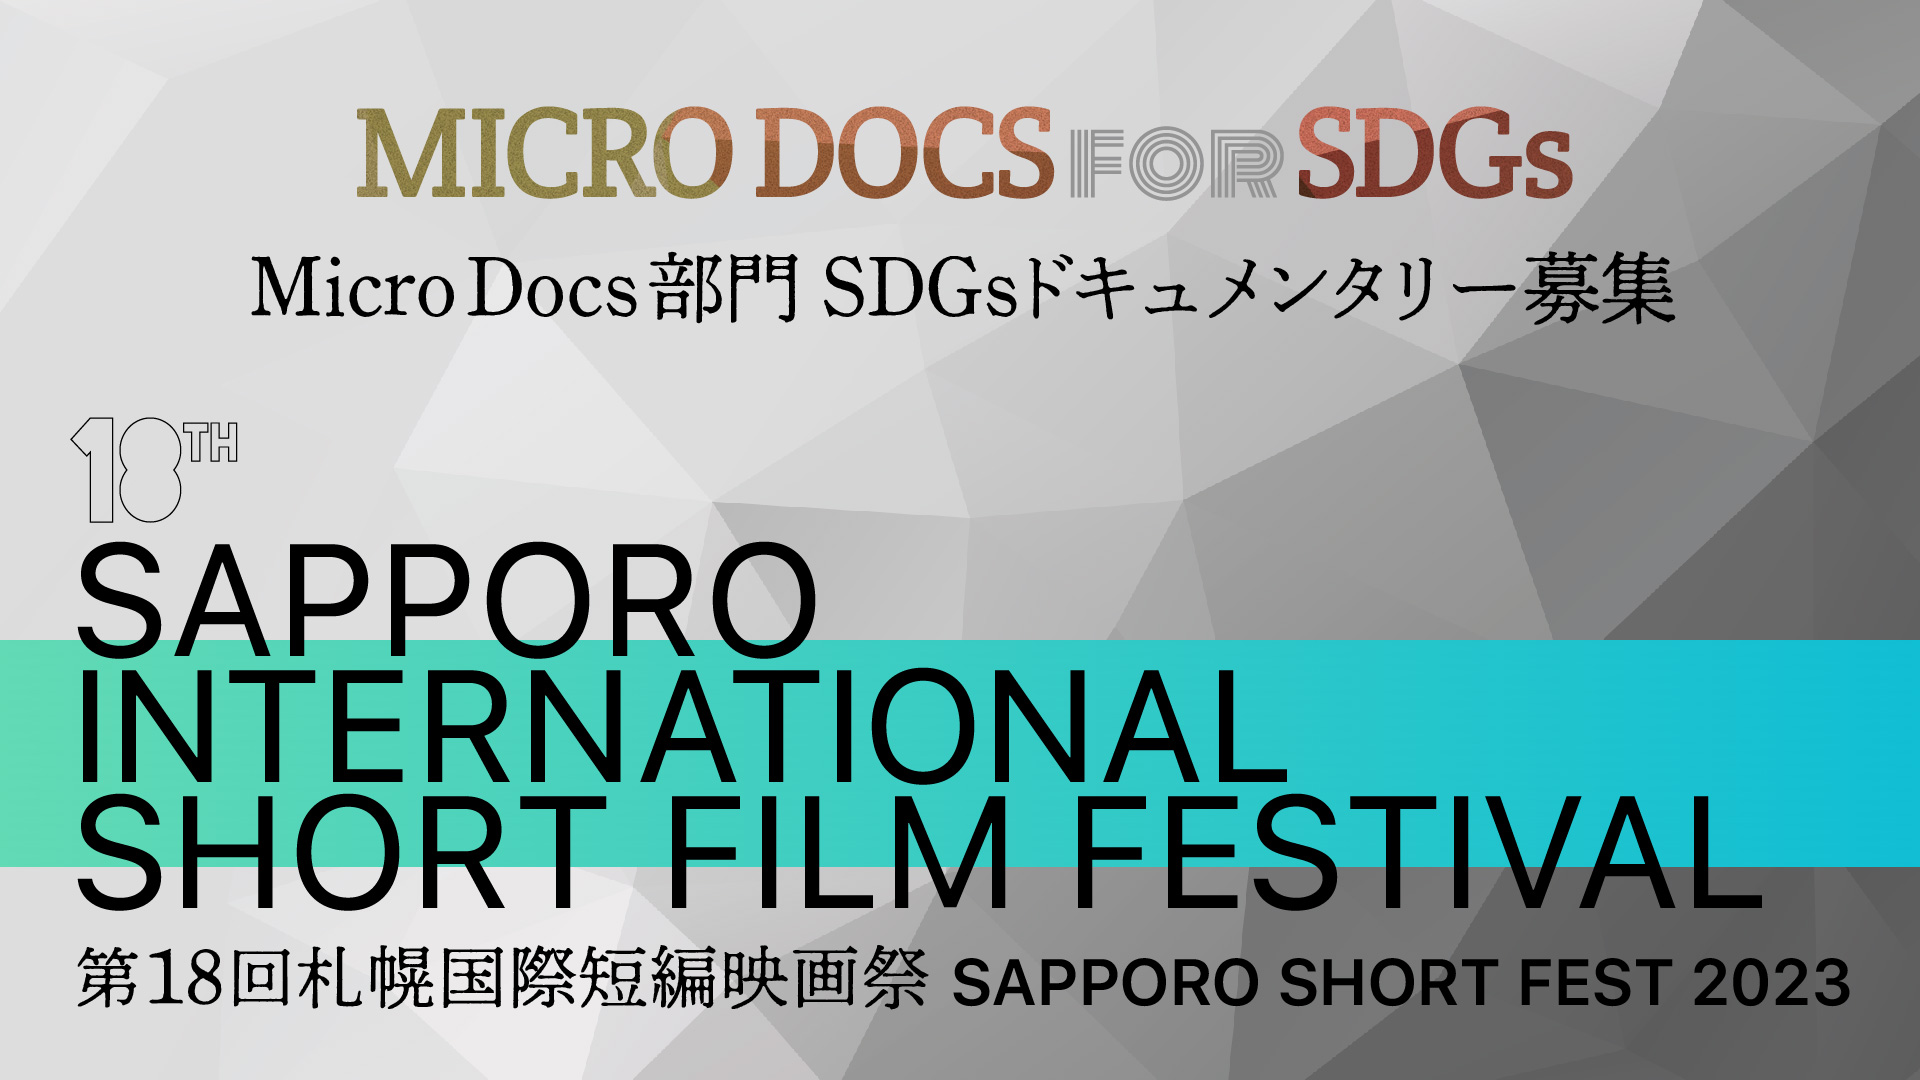 kursiv rent faktisk Kontoret Sapporo International Short Film Festival & Market | 札幌国際短編映画祭 – SAPPORO  SHORT FEST